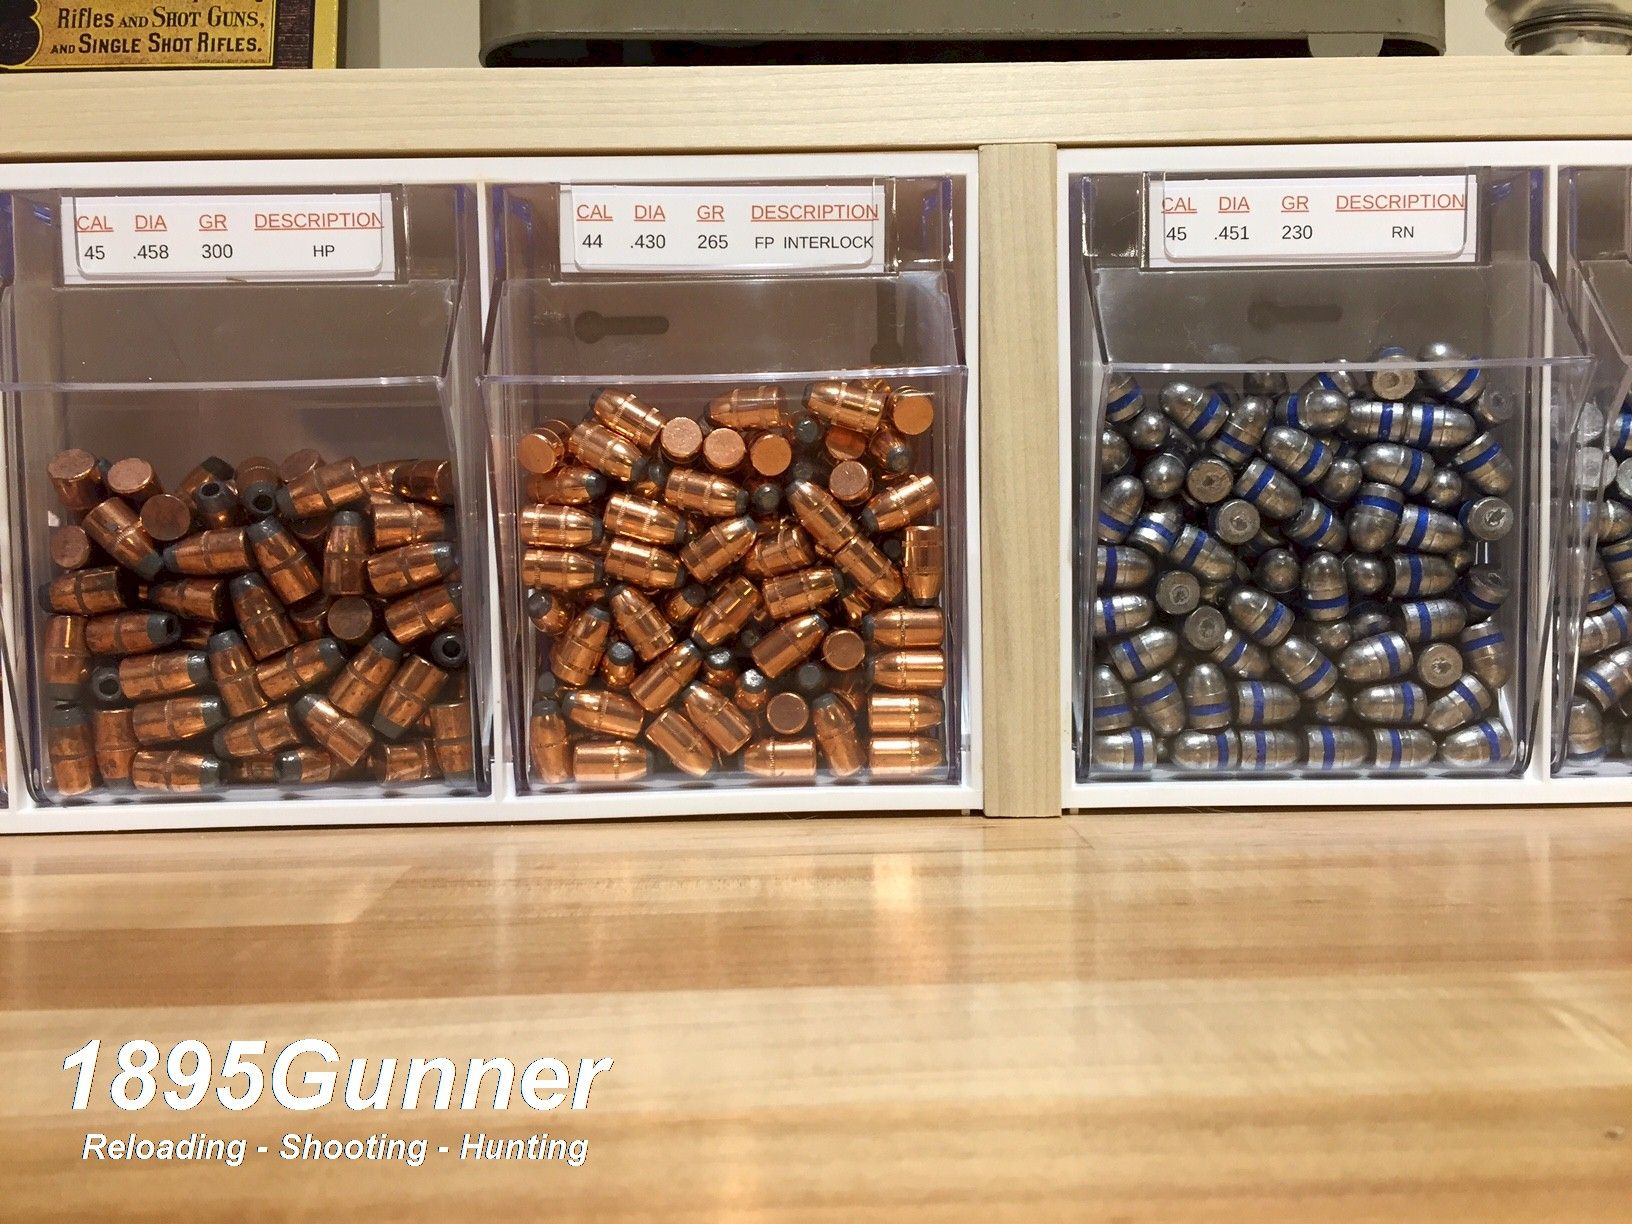 Wwwpinterest1895gunner Bullet Storage Bins On Reloading intended for size 1632 X 1224